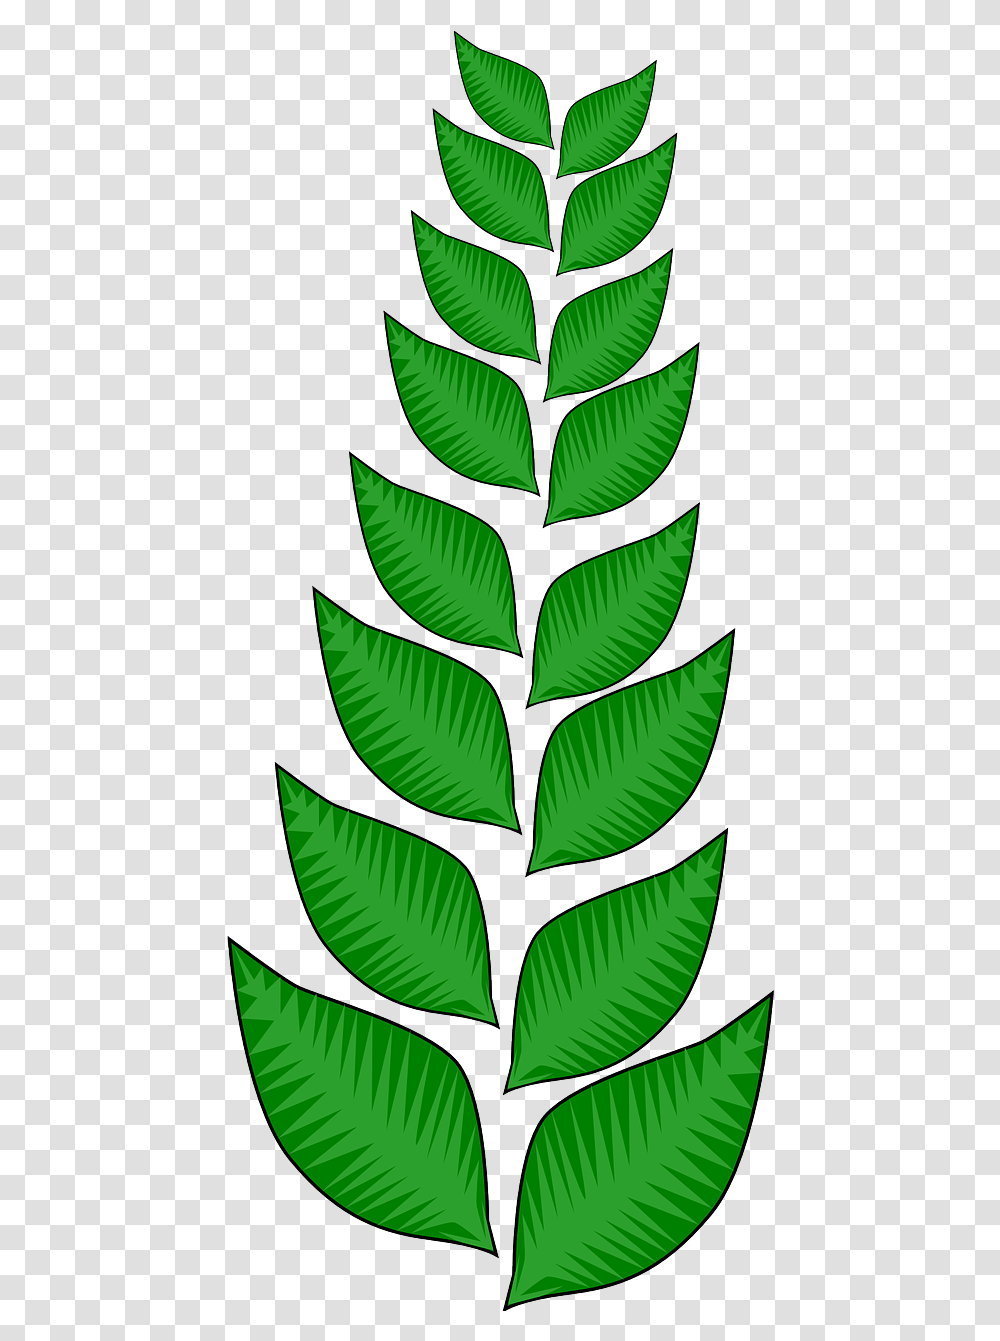 Vegetation, Leaf, Plant, Green Transparent Png